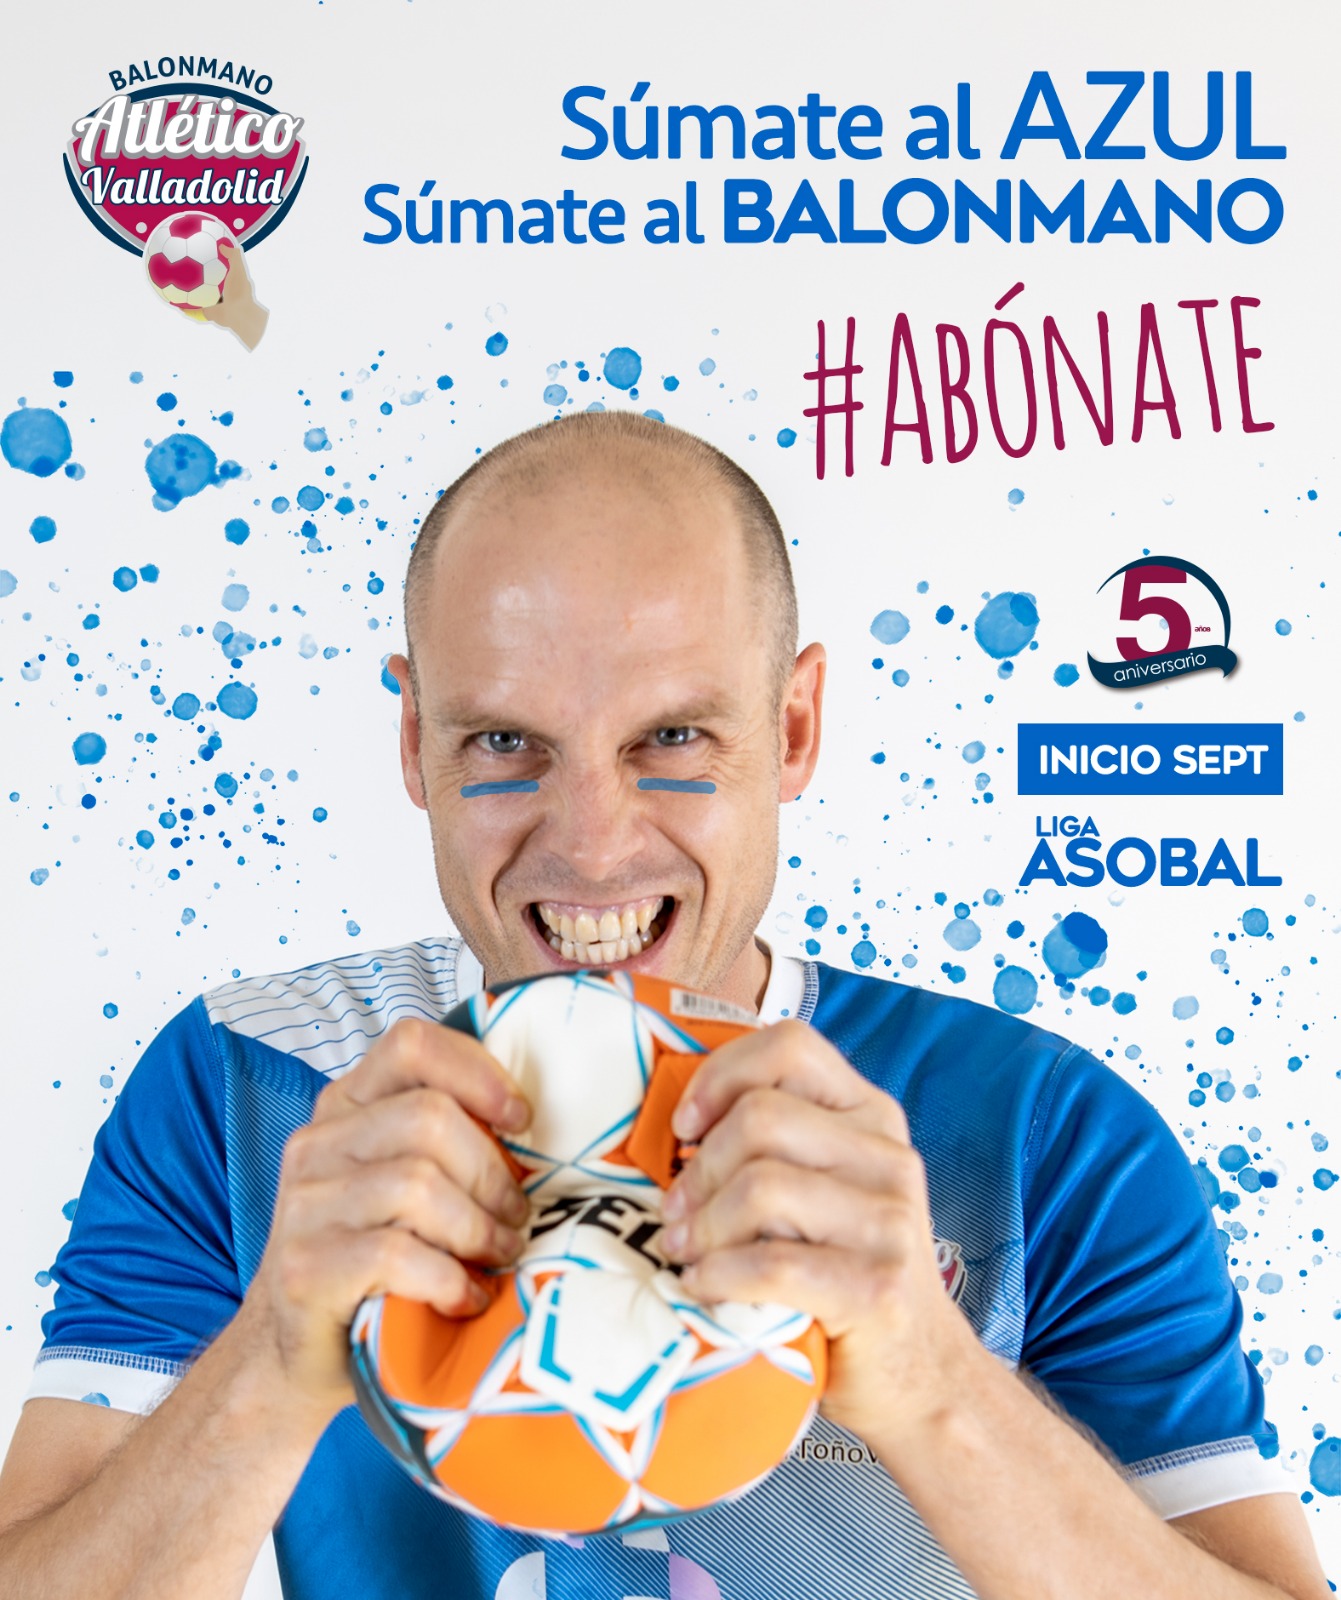 ¡Súmate al azul’, súmate al balonmano con el Recoletas Atlético Valladolid | Galería 1 / 28